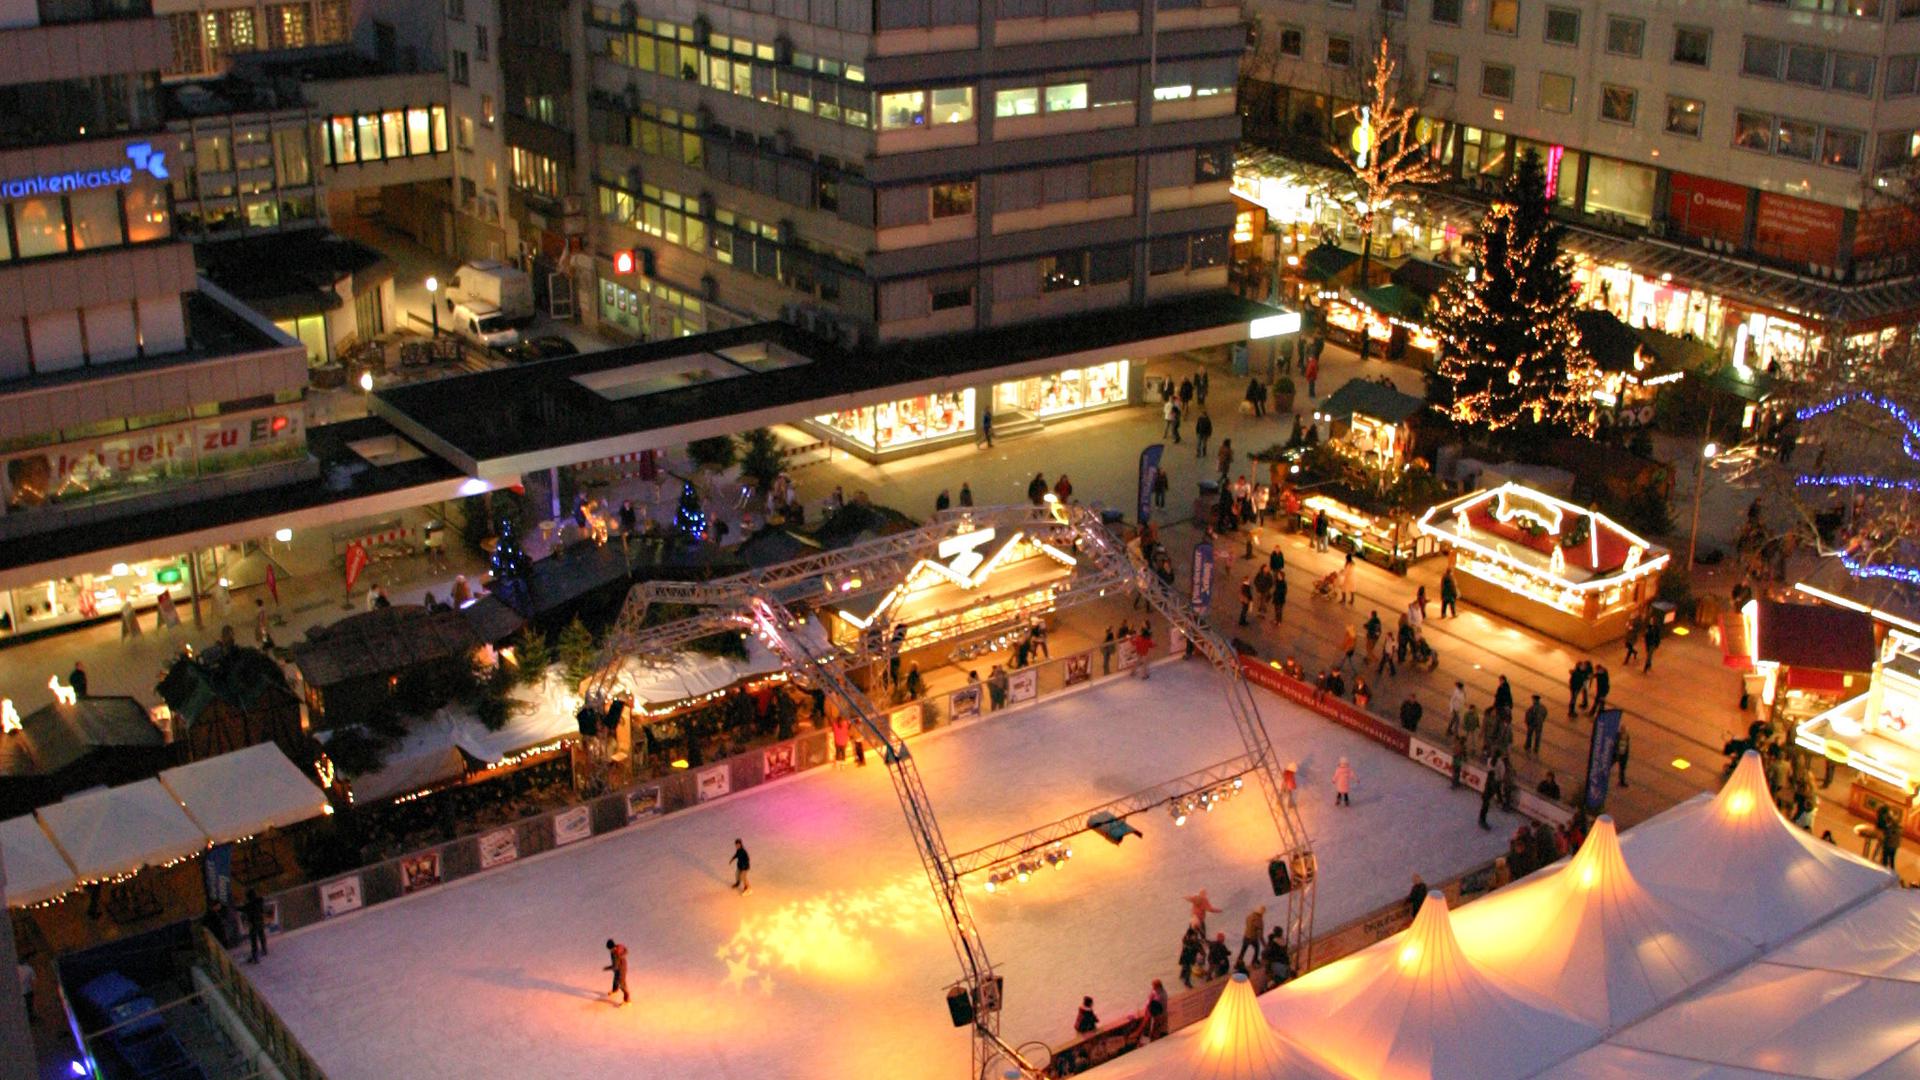 Eislaufen auf dem Marktplatz